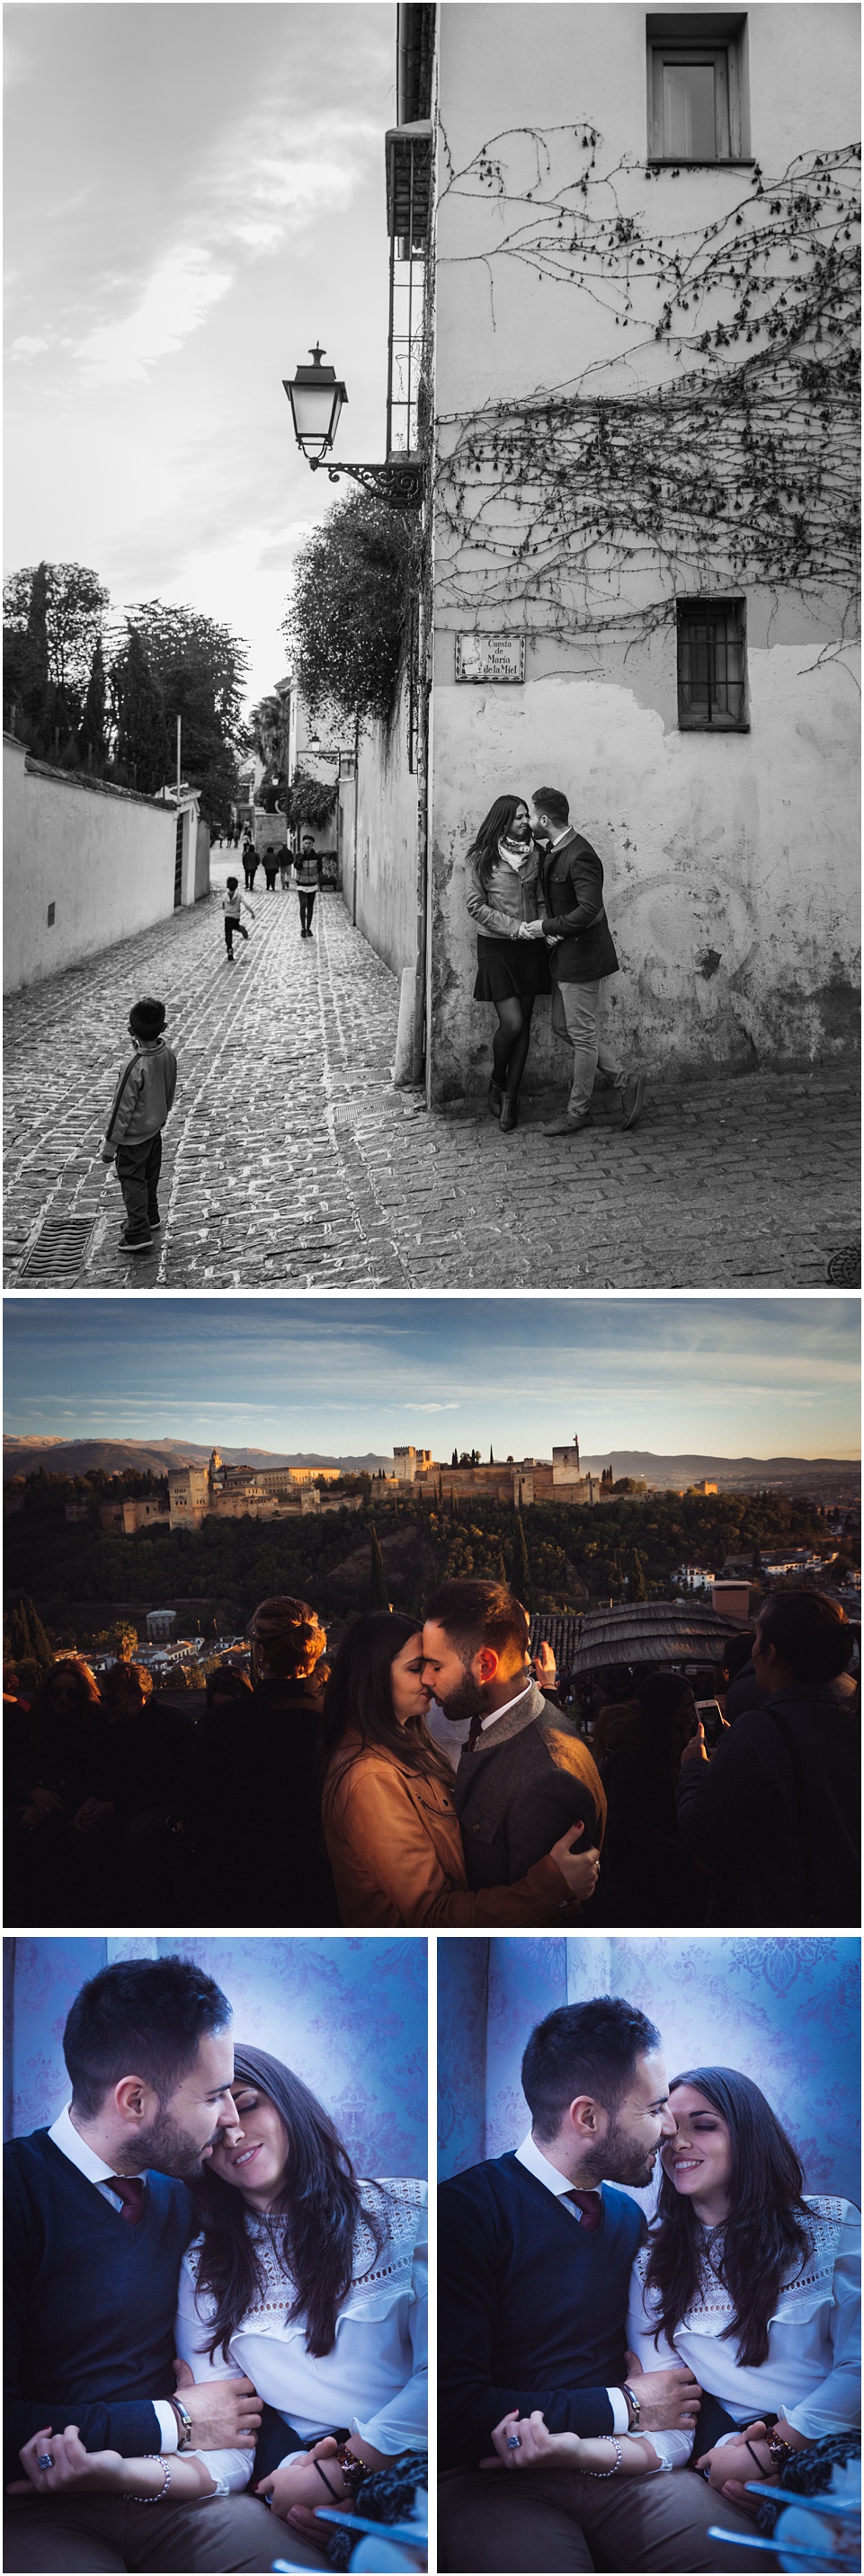 Calles de Granada,Granada,Sesión de pareja en Granada,fotografia en pareja,sesion en pareja,